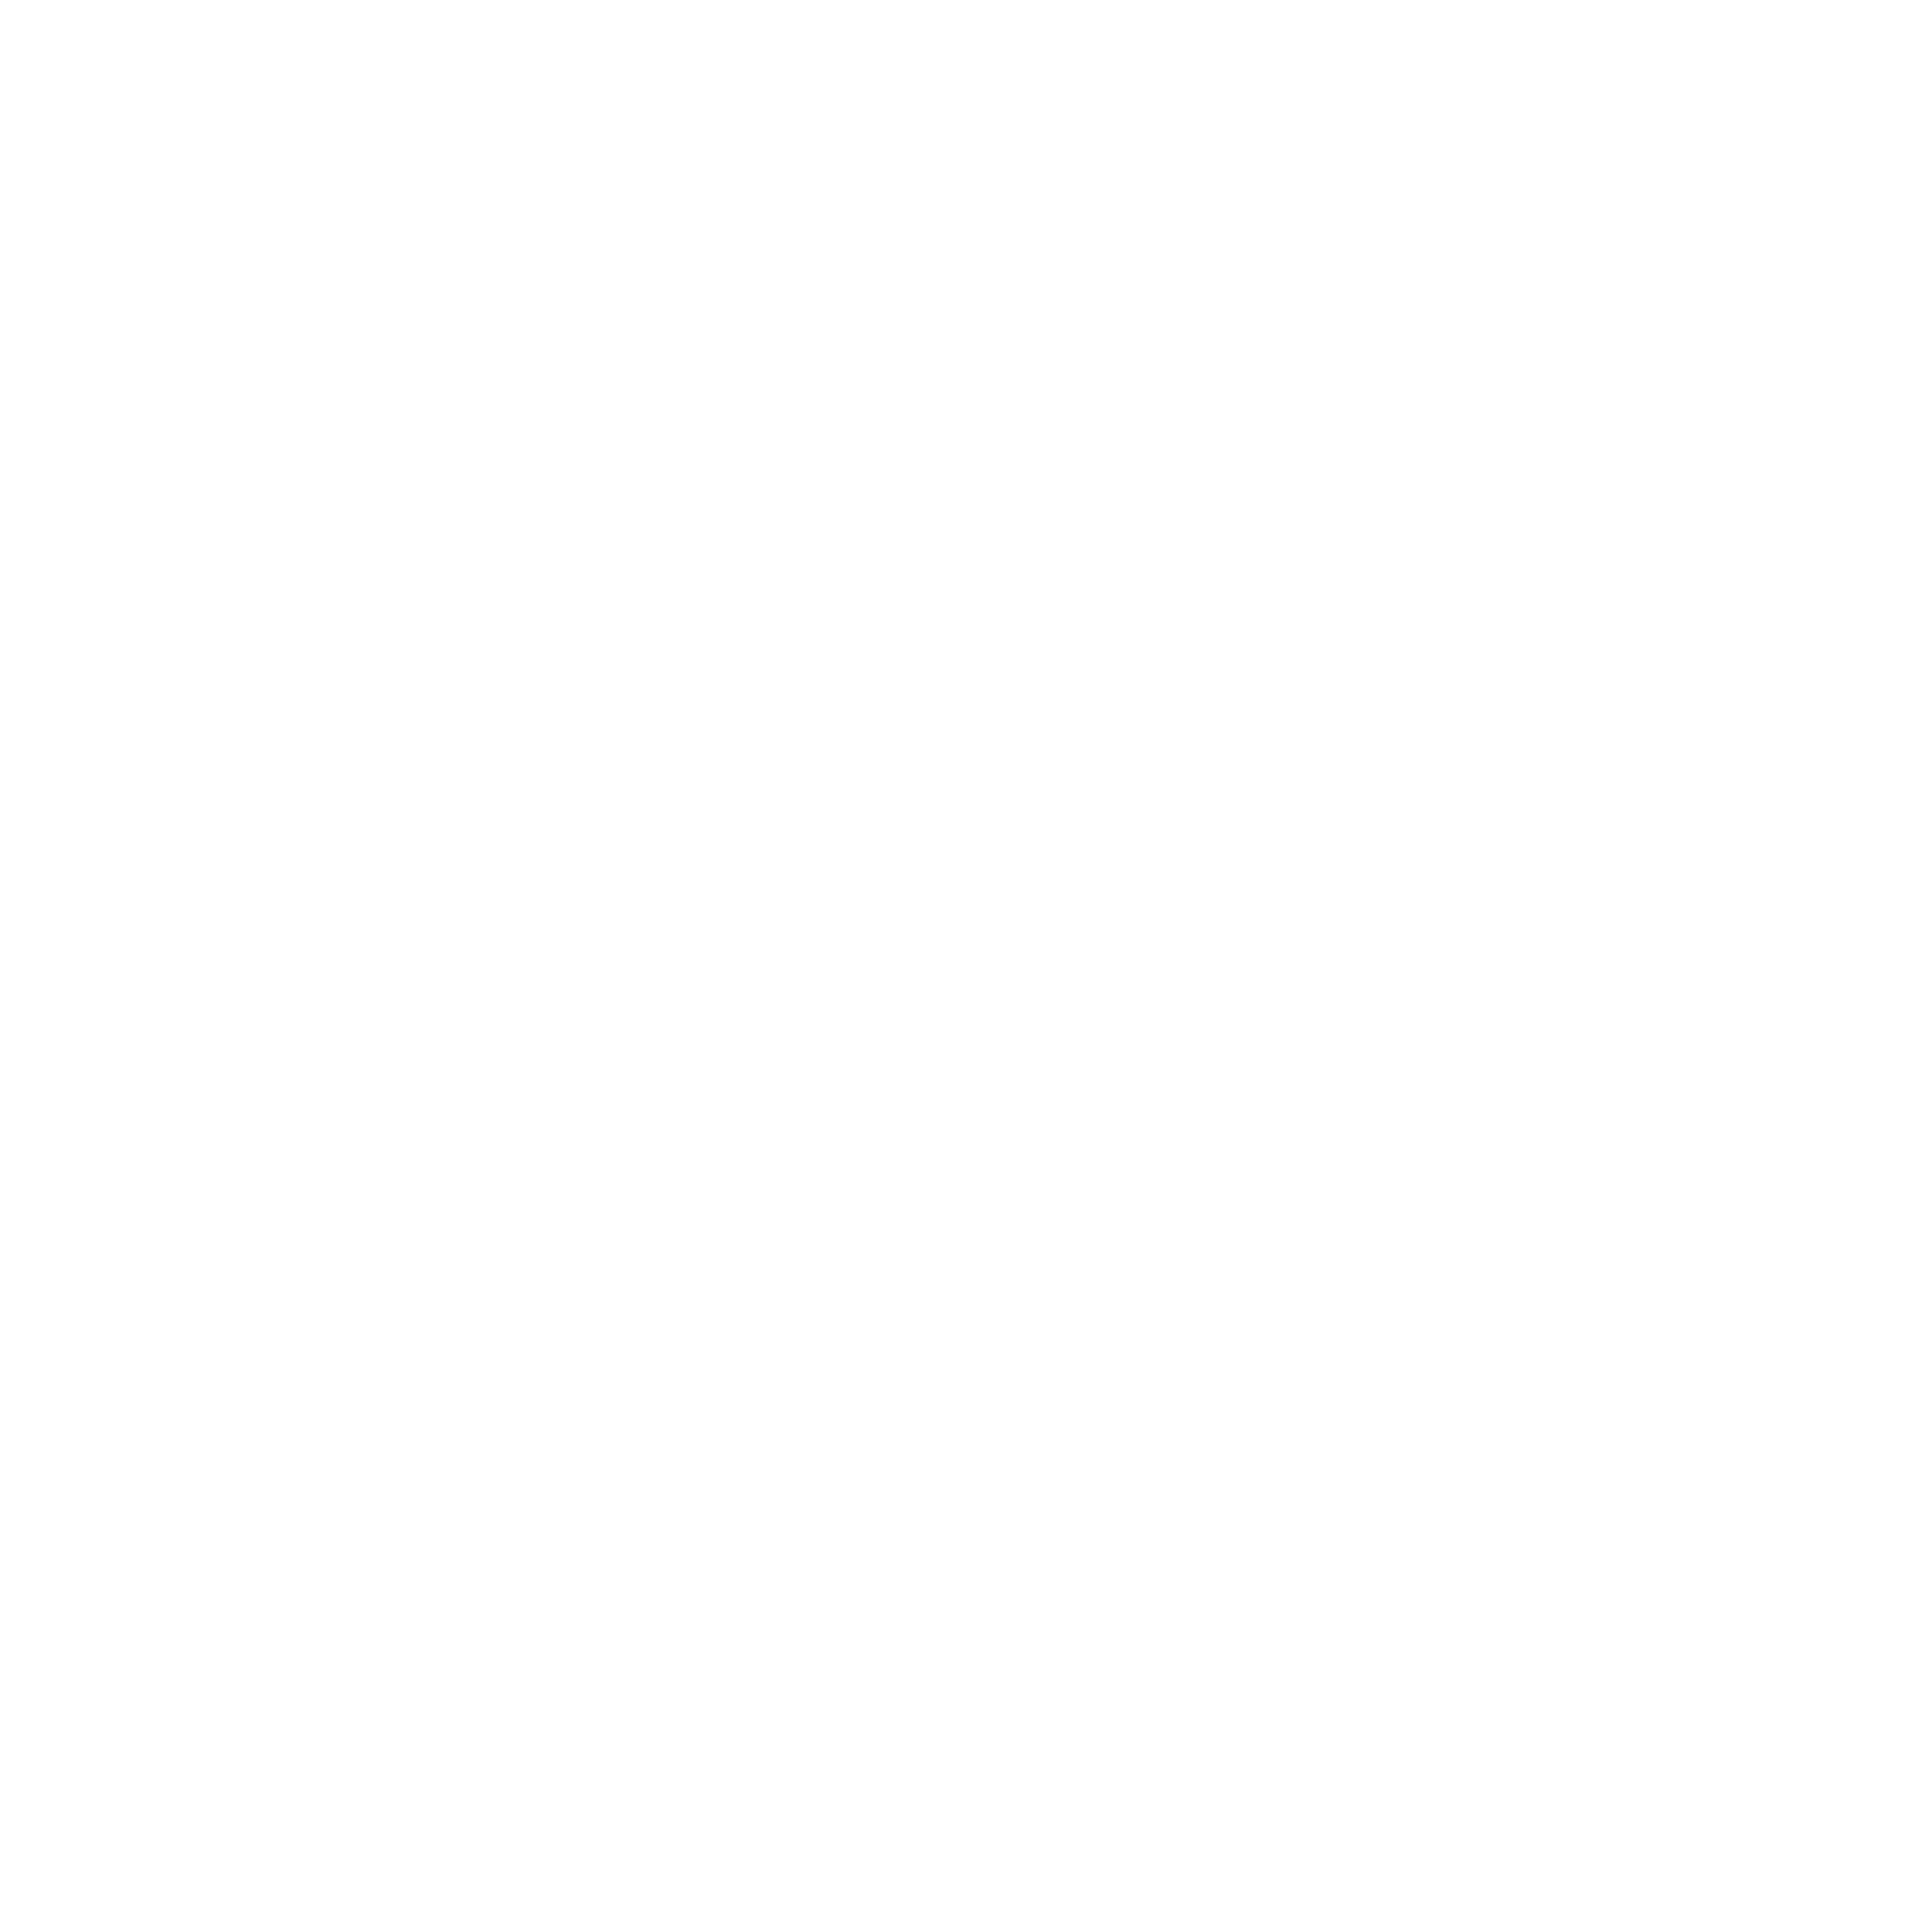 logo pizzaria